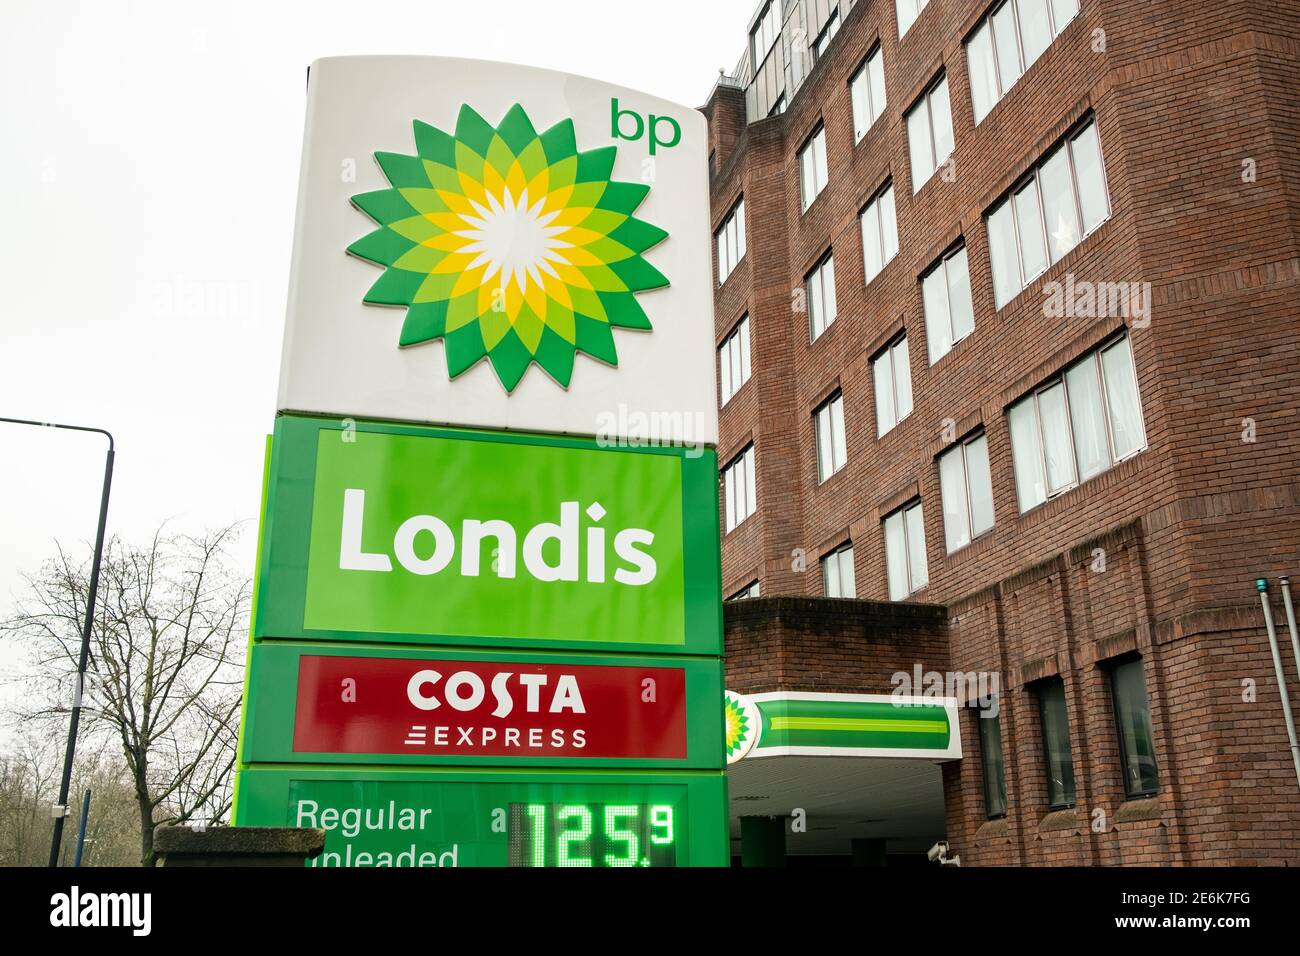 Londra - Gennaio 2021: Stazione di servizio BP con minimarket Londis e Costa Express Foto Stock